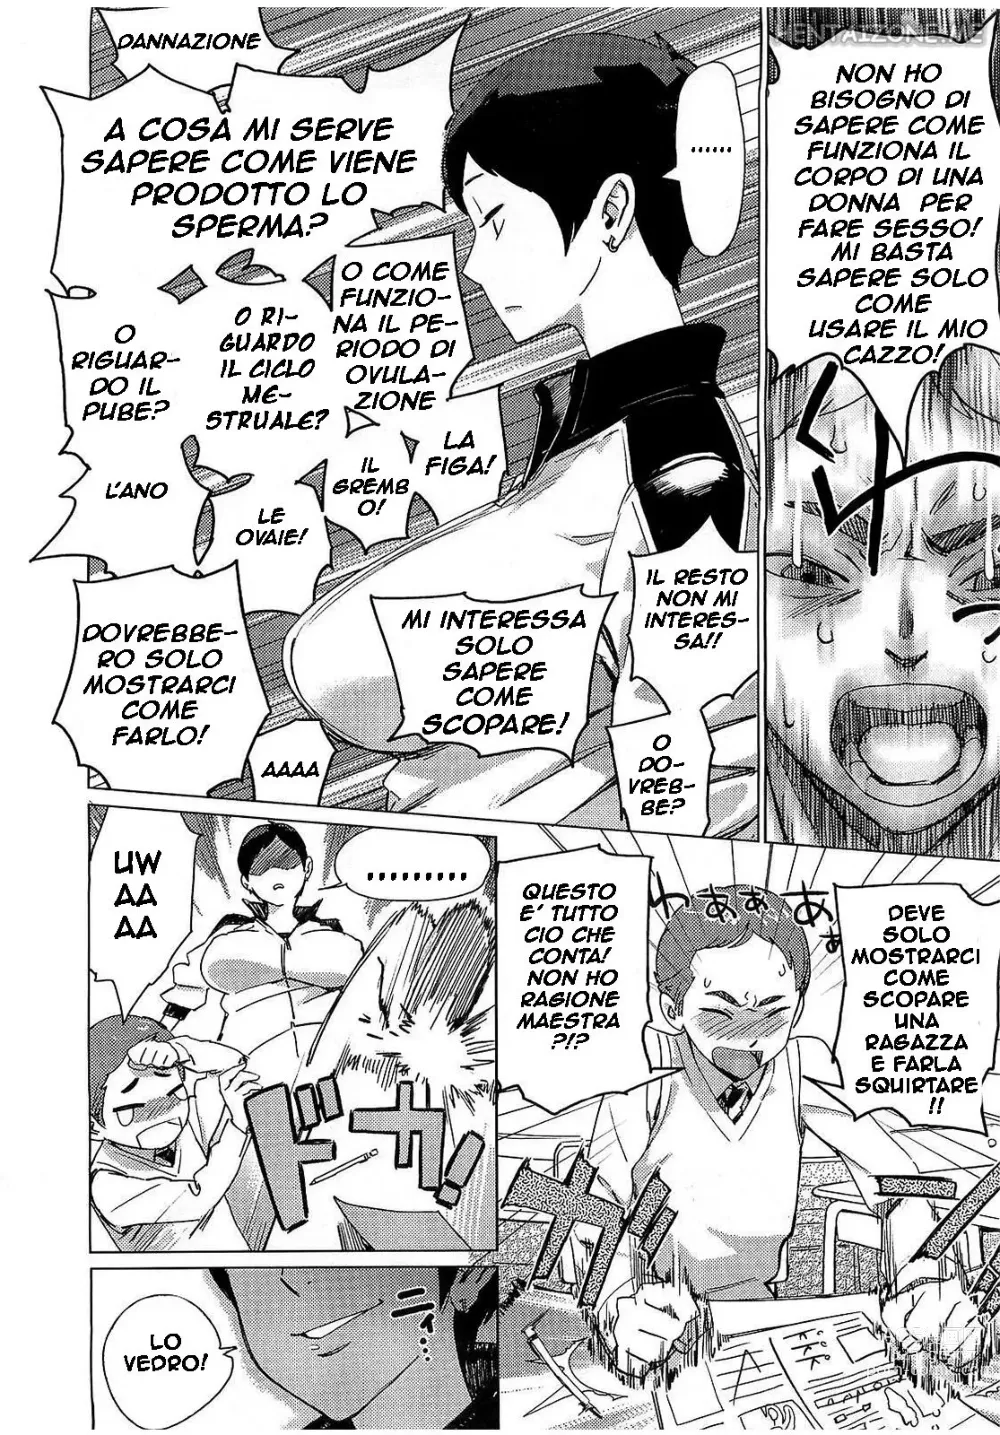 Page 4 of manga La Maestra di Educazione Sessuale (decensored)